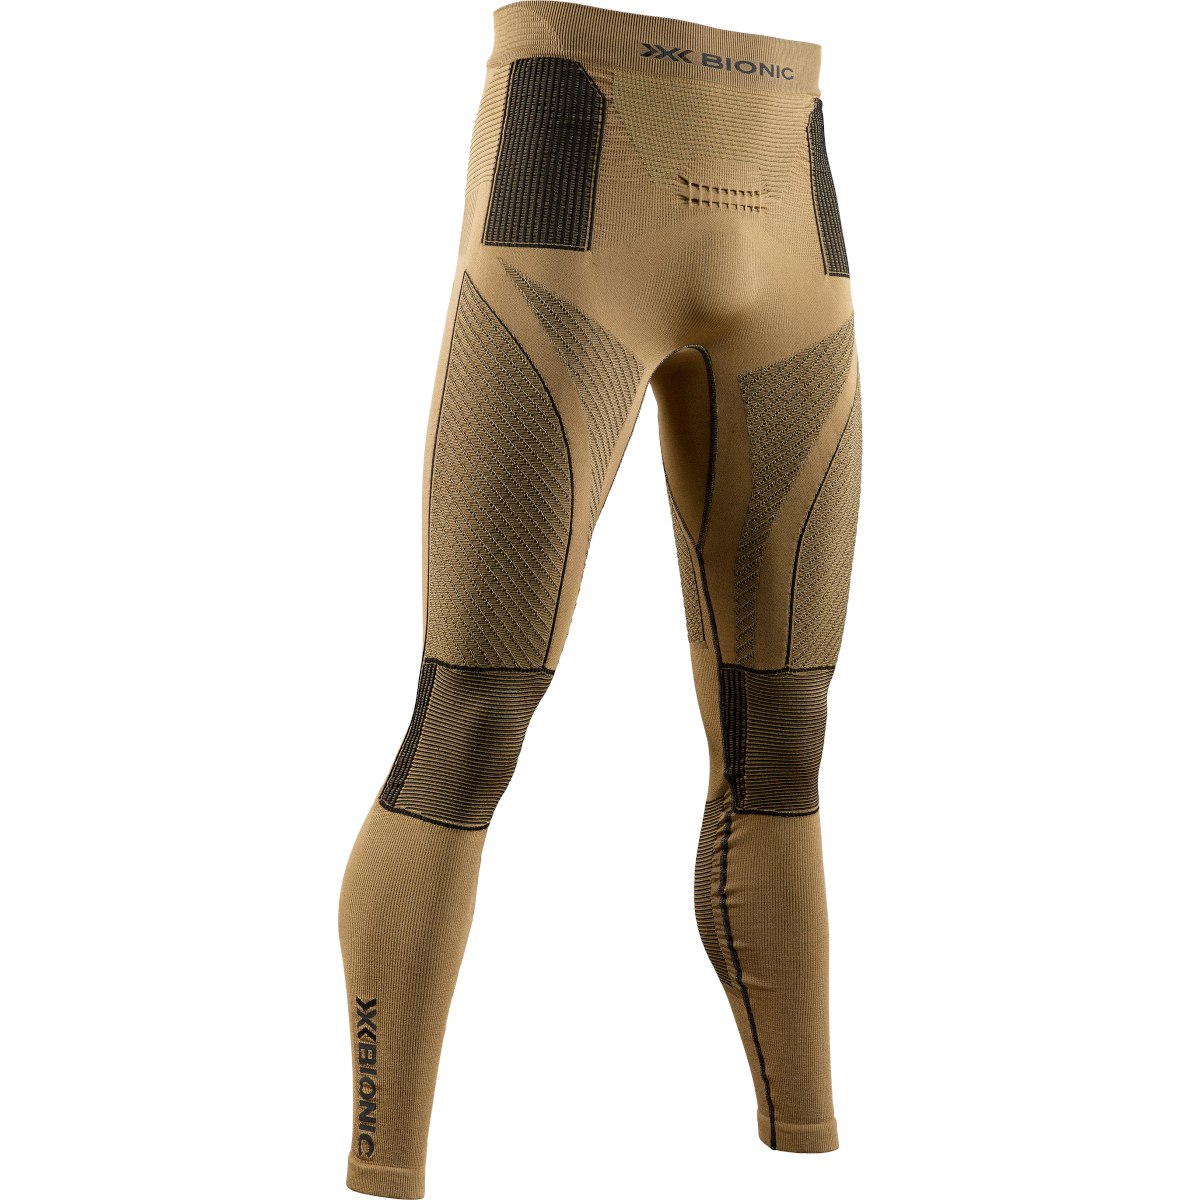 Produktbild von X-Bionic Radiactor 4.0 Lange Unterhose Herren - gold/black